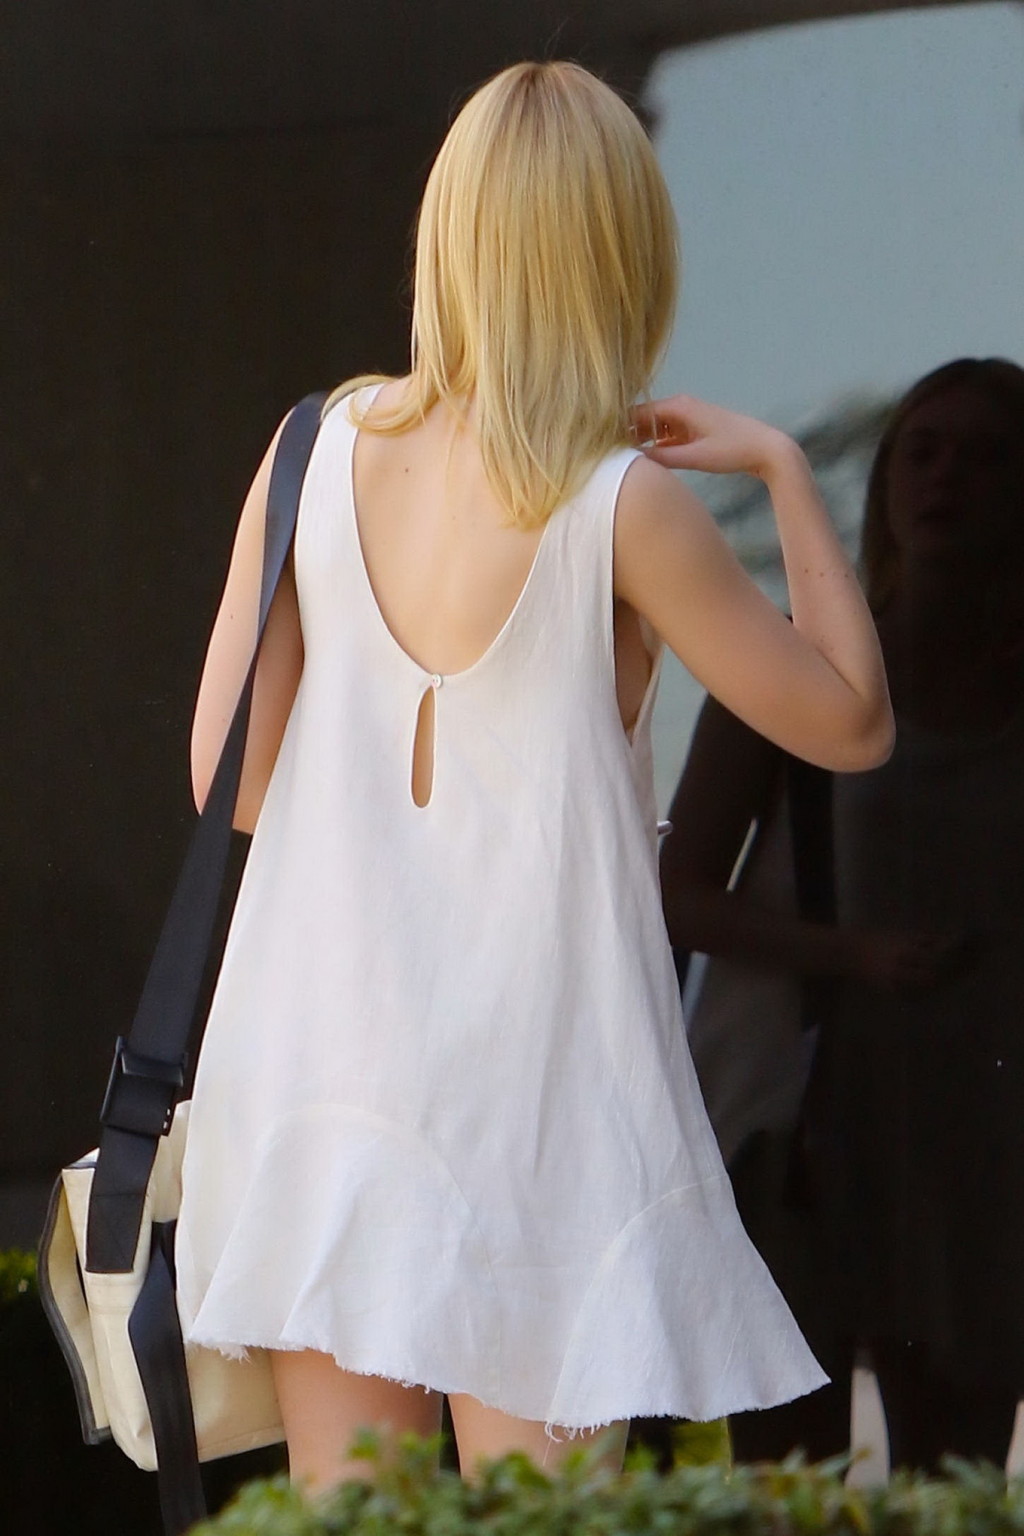 Elle fanning muestra sus tetas desnudas en un mini vestido blanco
 #75151633